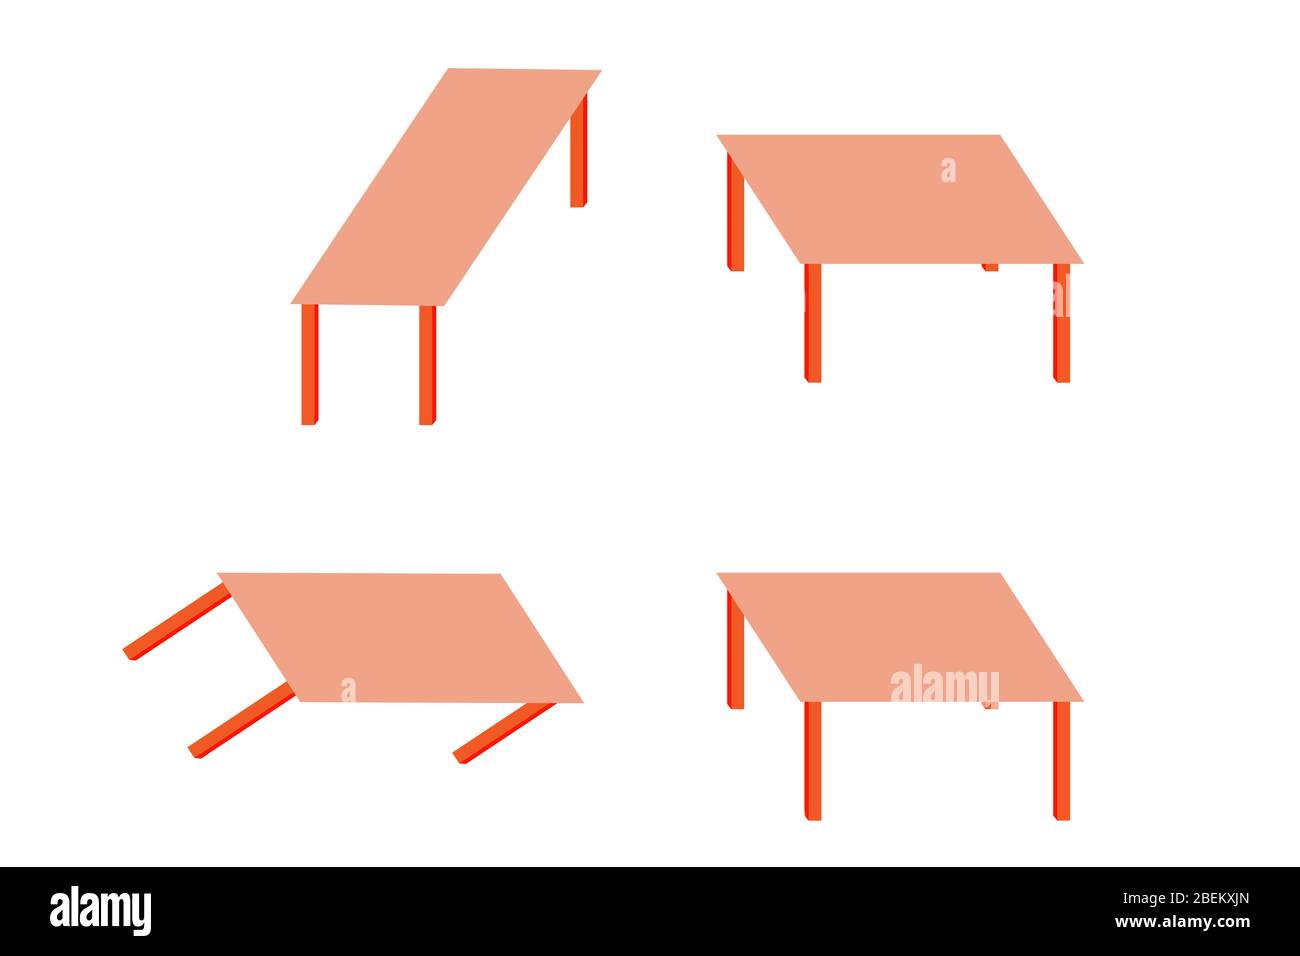 Shepard-Tabellen. Optische Täuschung. Ein Paar identischer Parallelogramme, die die Oberseiten zweier Tabellen darstellen, erscheinen radikal unterschiedlich. Stockfoto